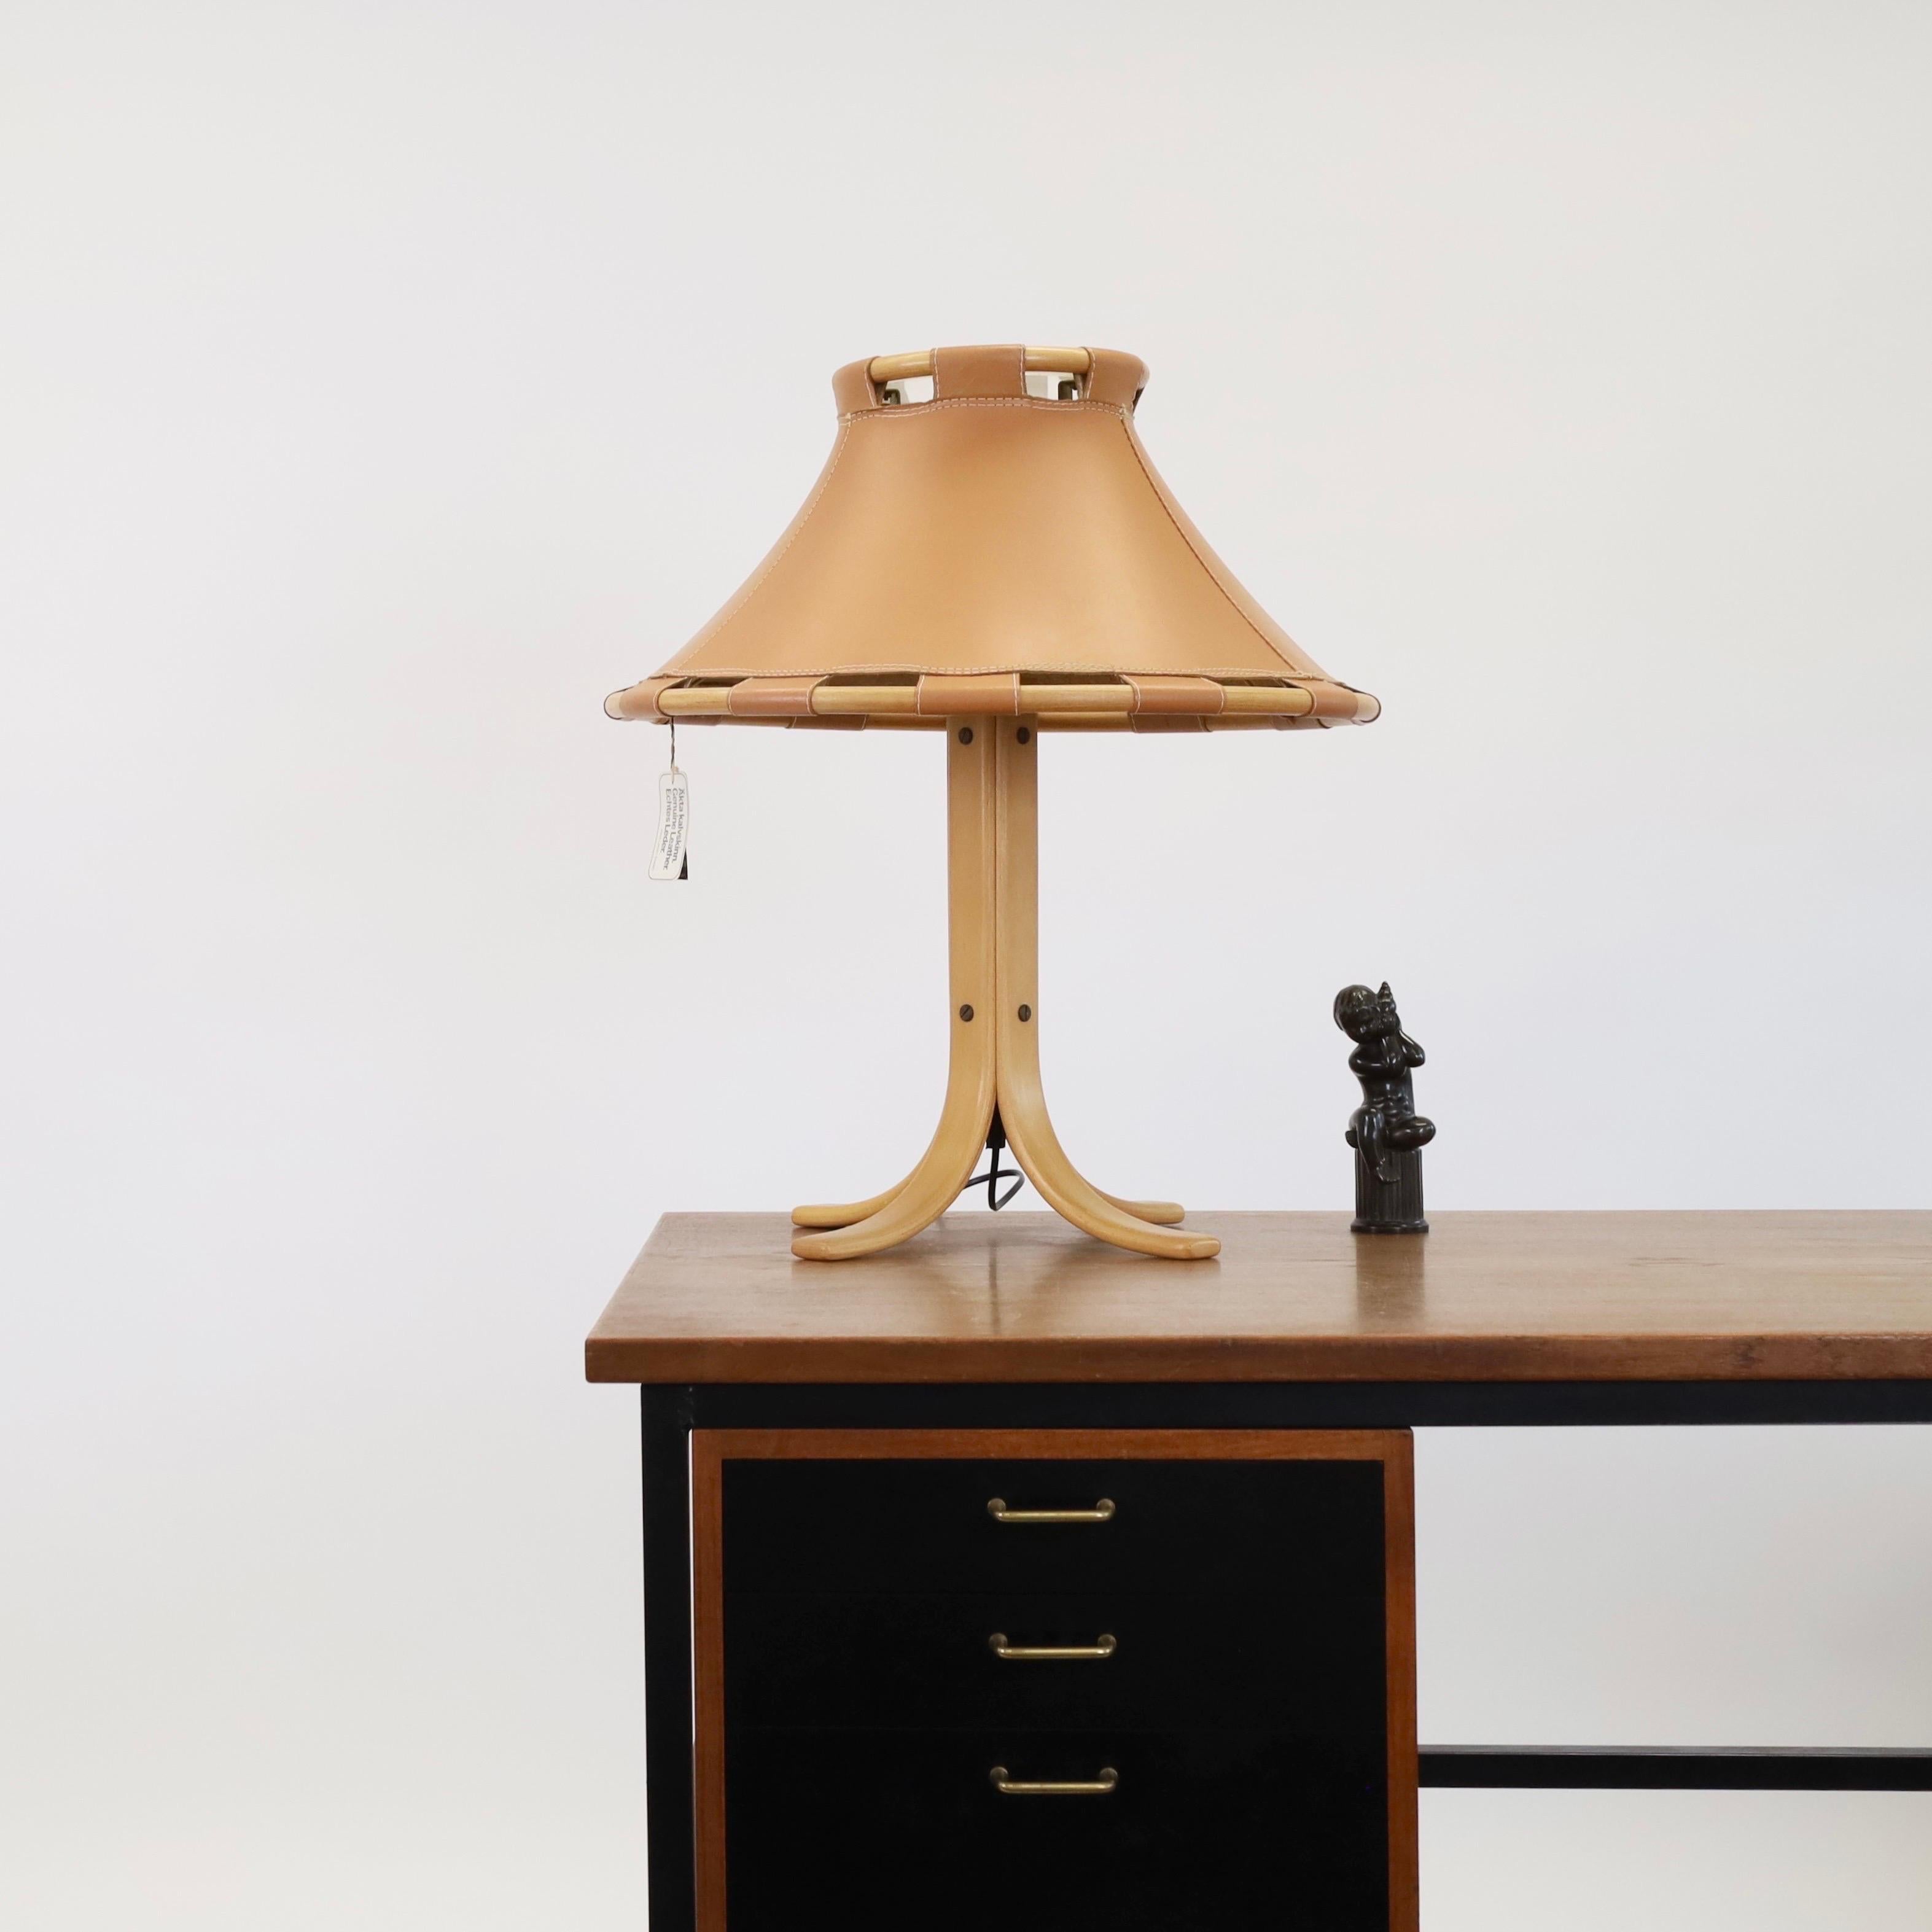 Eine massive Schreibtischlampe aus Buchenholz und Leder von Anna Ehrner für Ateljé Lyktan. Ein nordisches Flair für jeden schönen Raum.   

* Eine Schreibtischlampe aus gebogenem Buchenholz auf vier Beinen mit einem großen Lederschirm auf einem